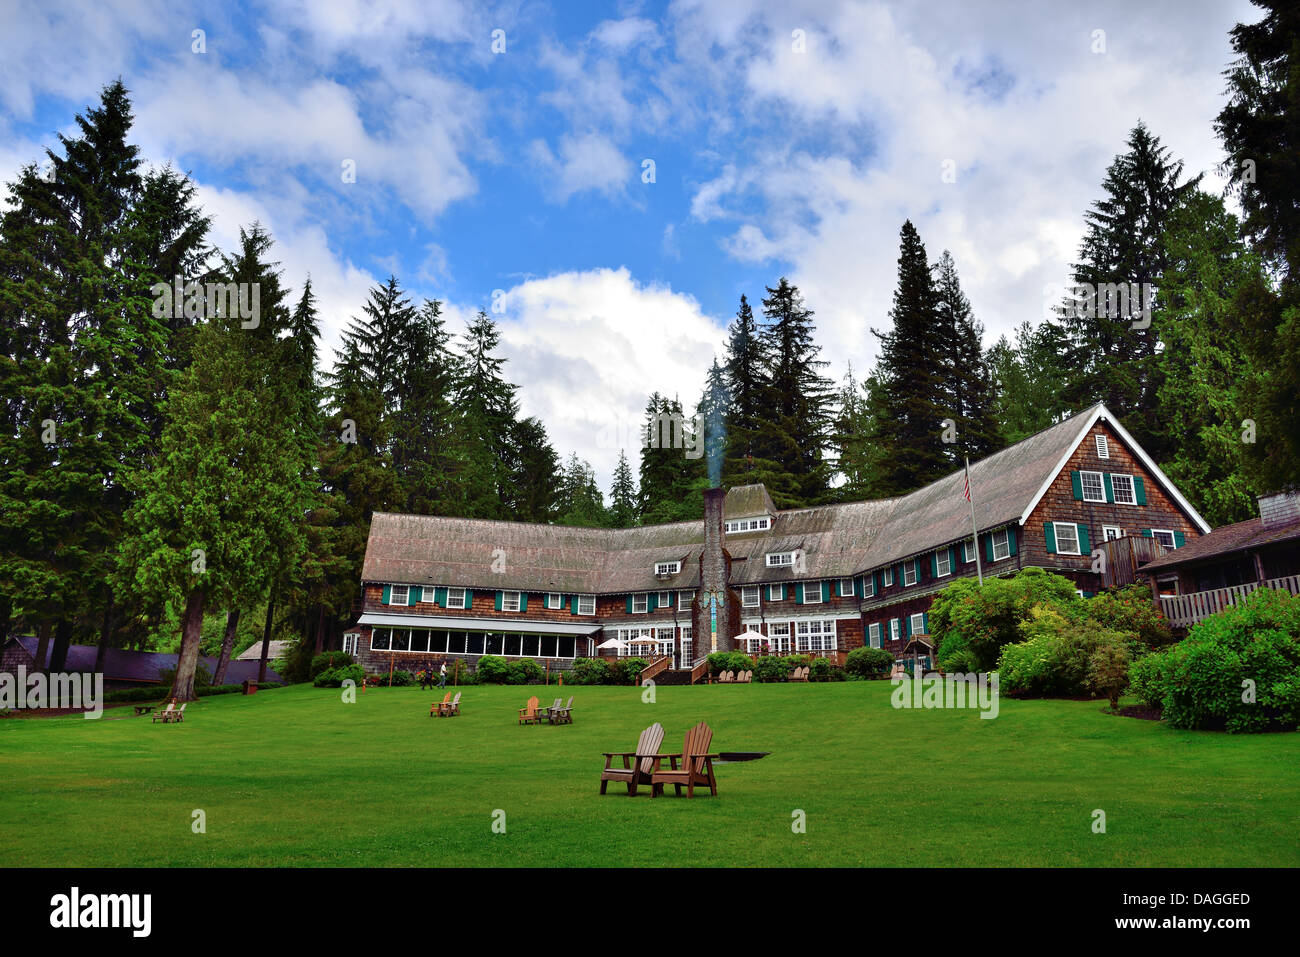 Historia de Lake Quinault Lodge. El Parque Nacional Olympic, Washington, Estados Unidos. Foto de stock